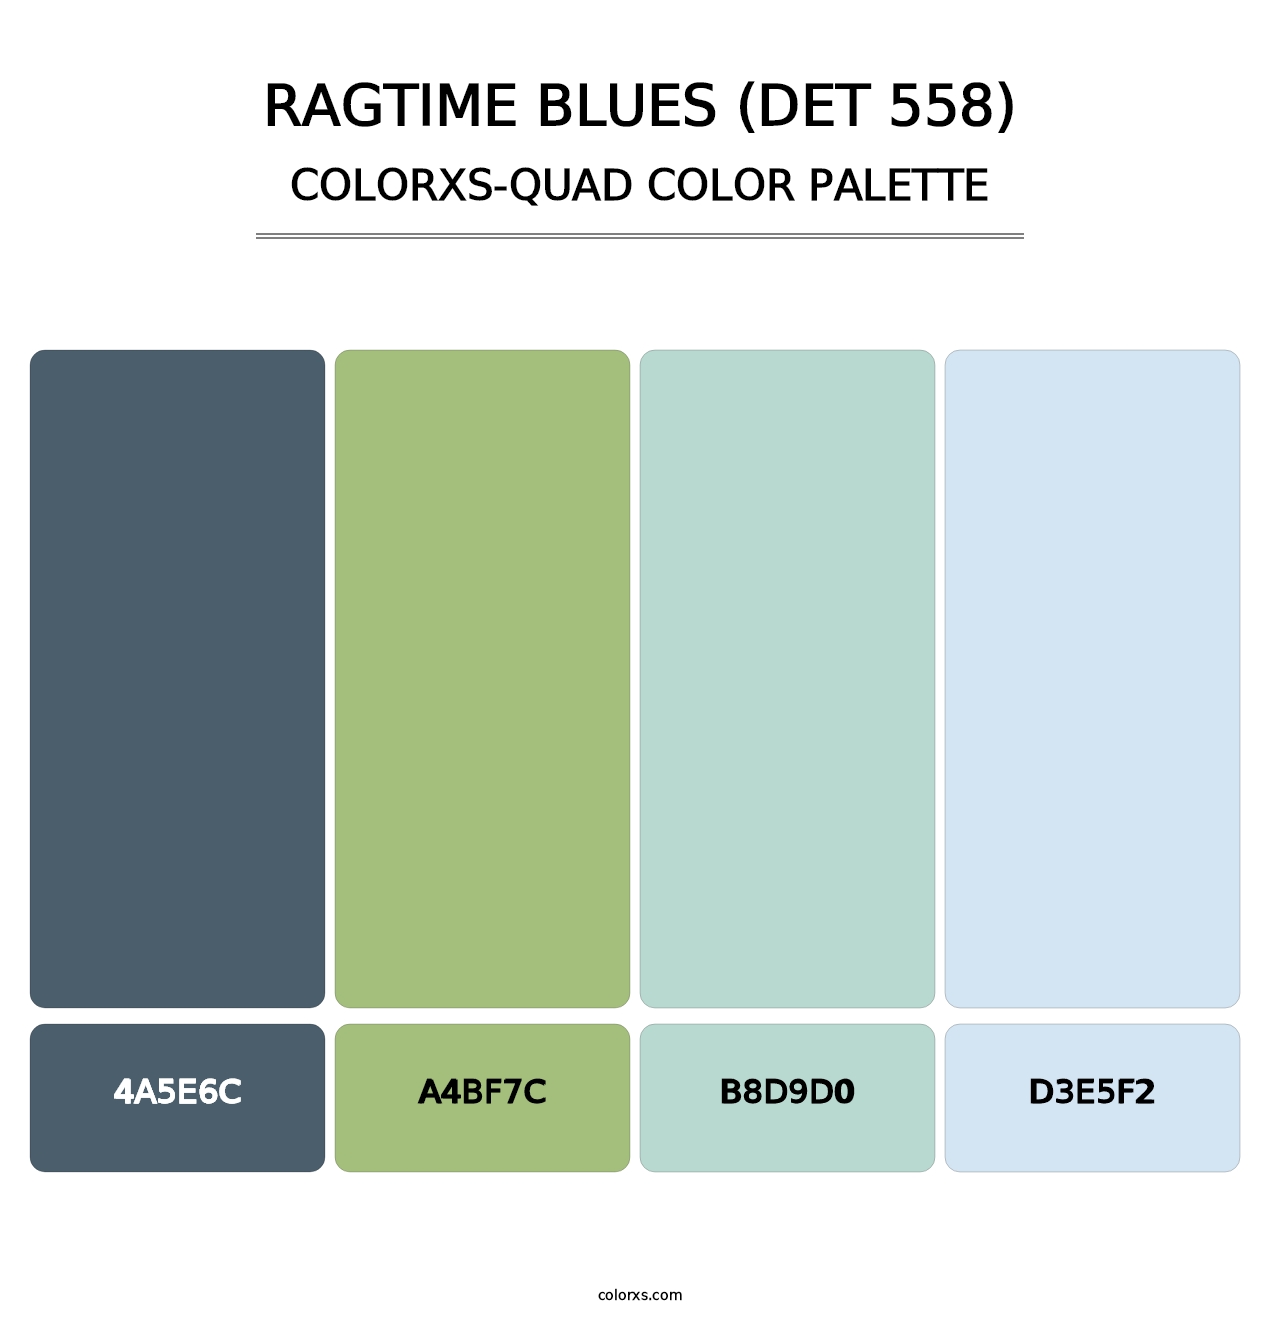 Ragtime Blues (DET 558) - Colorxs Quad Palette